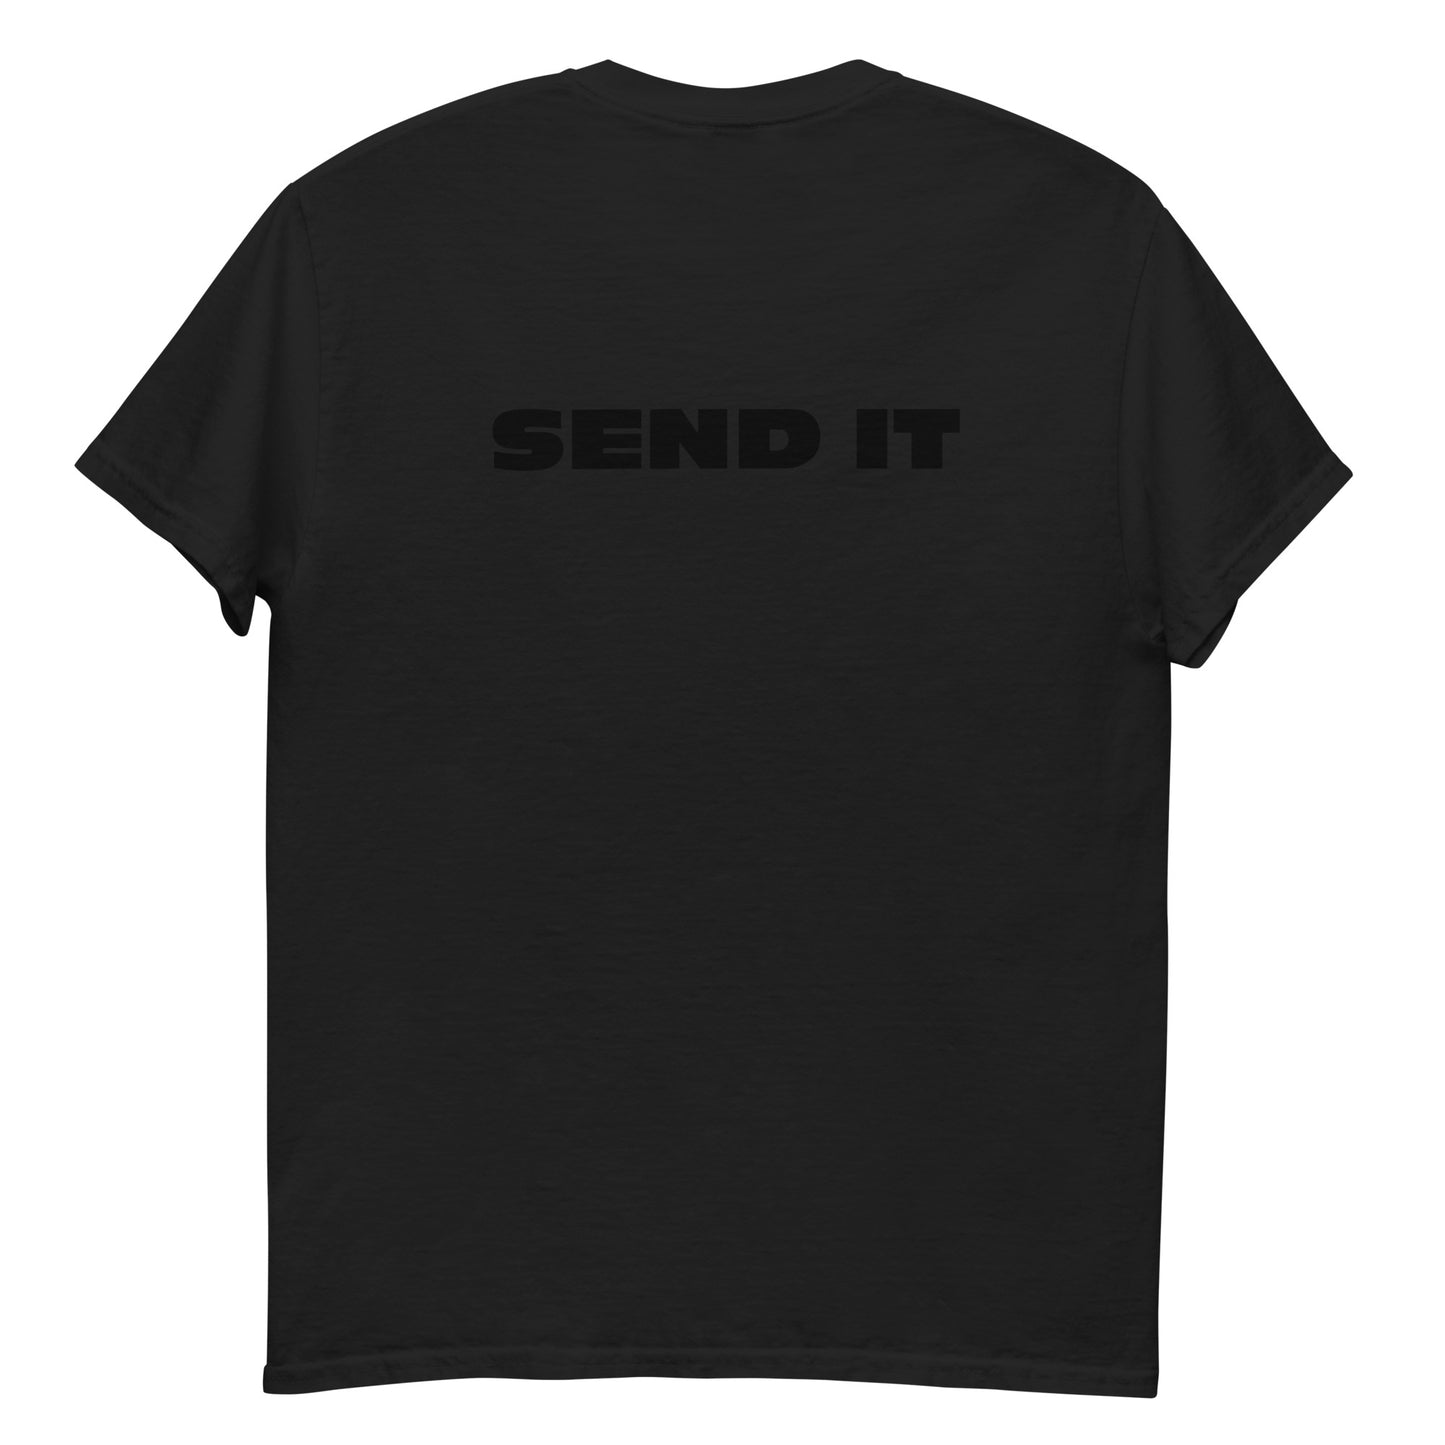 send it men's t-shirt